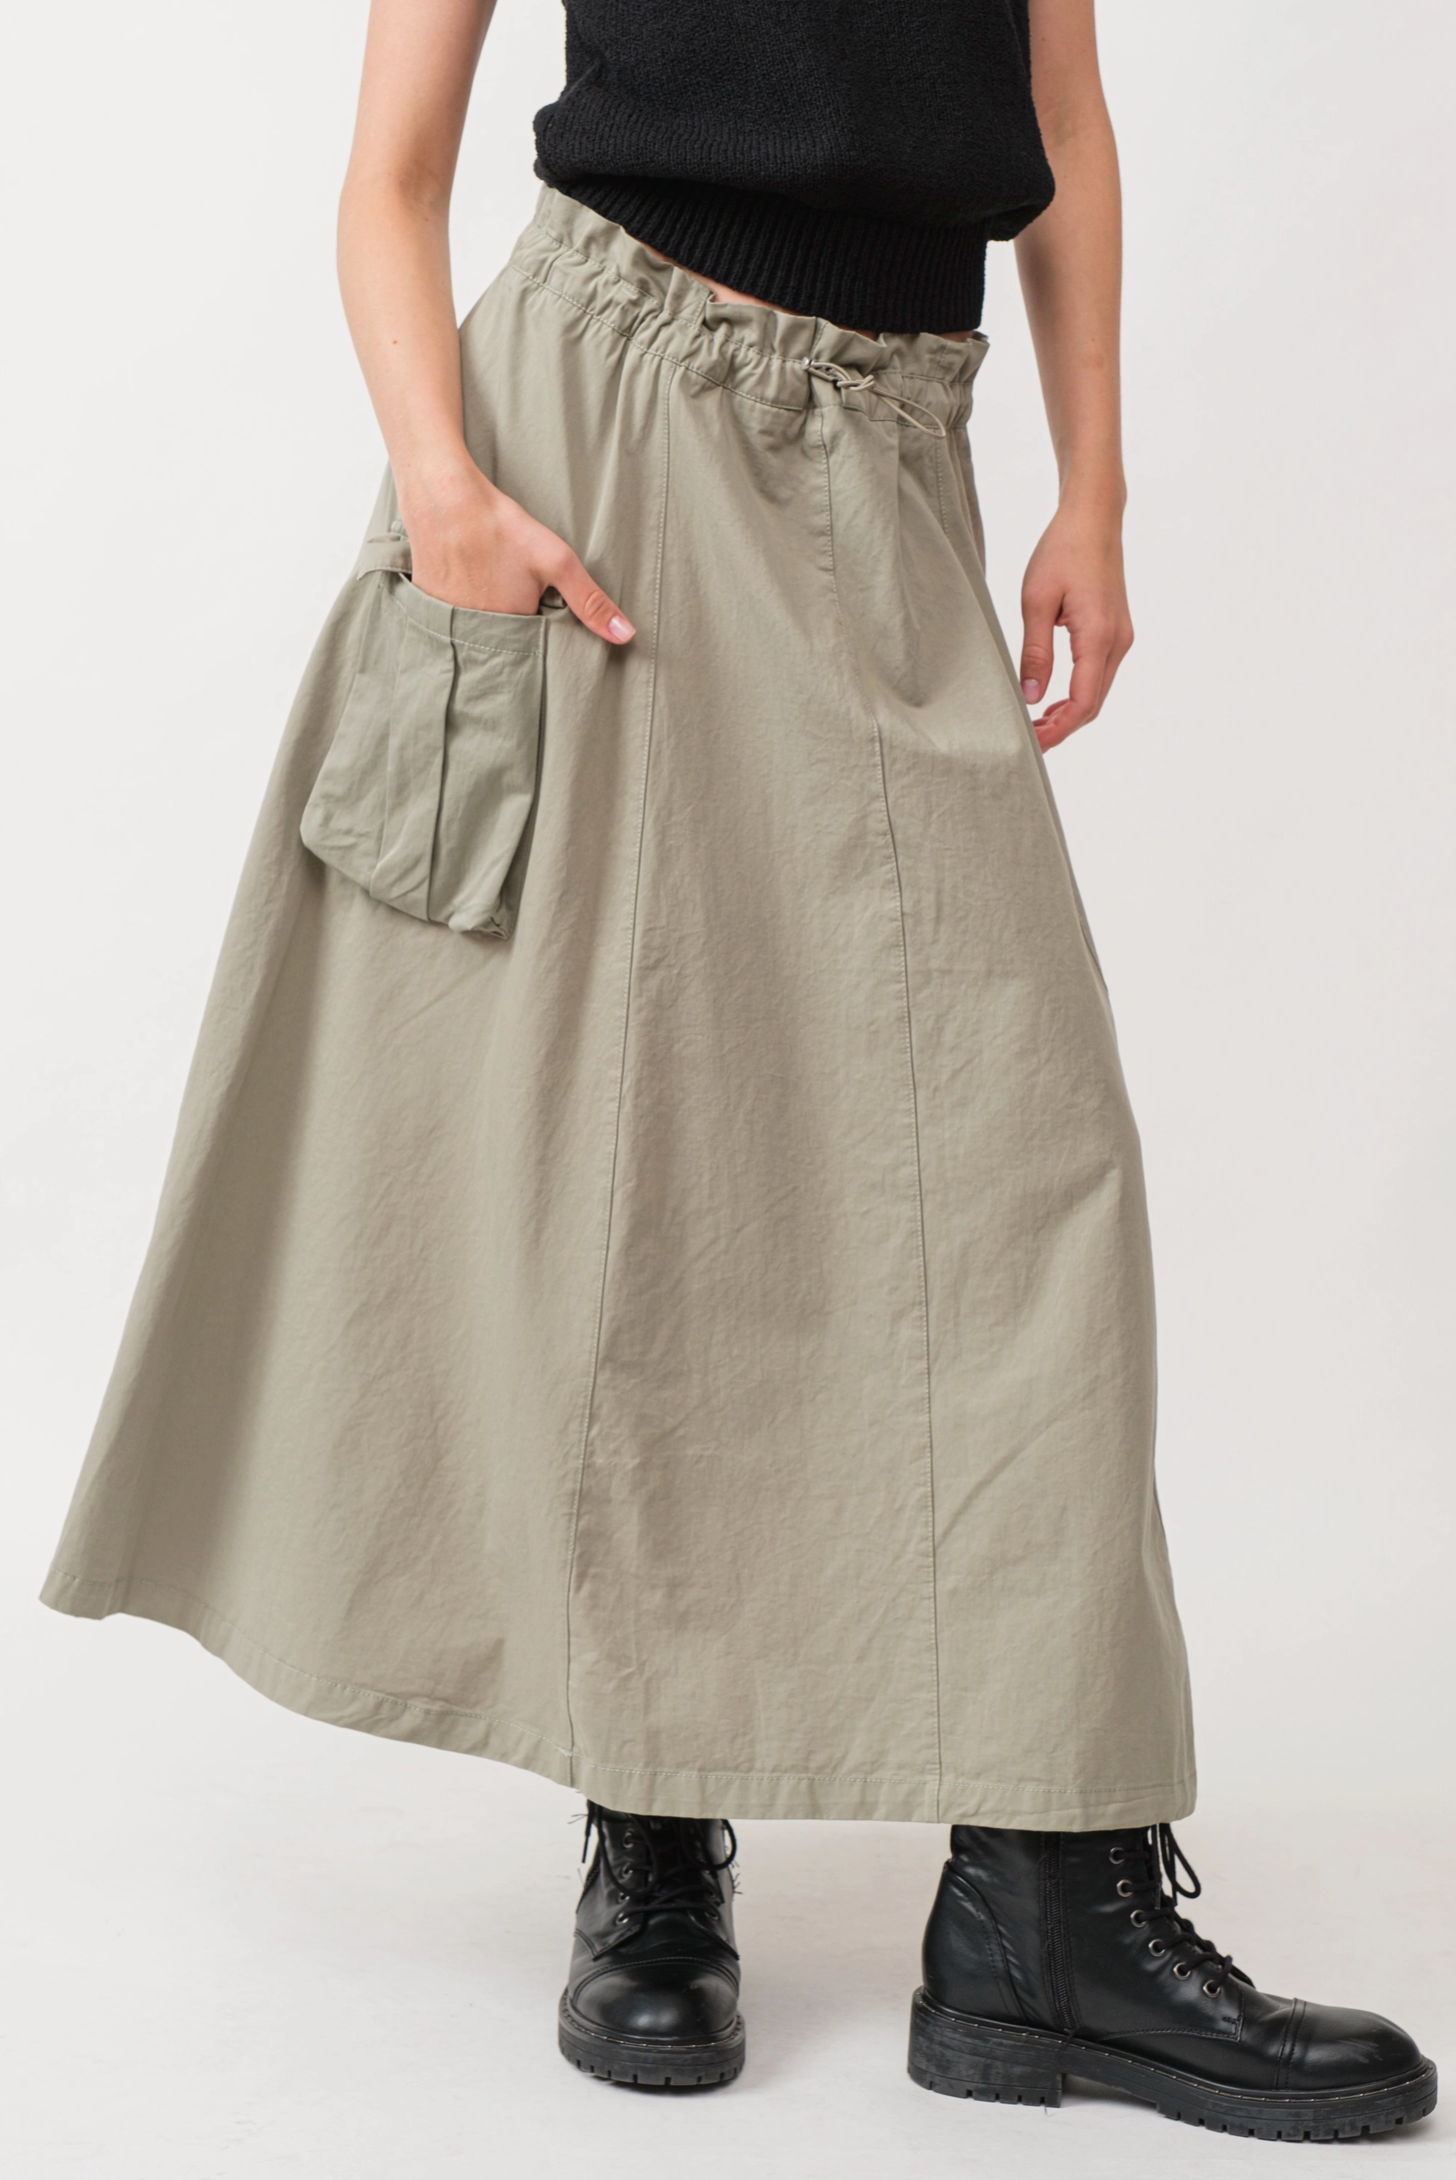 Carolina Cotton Maxi Skirt